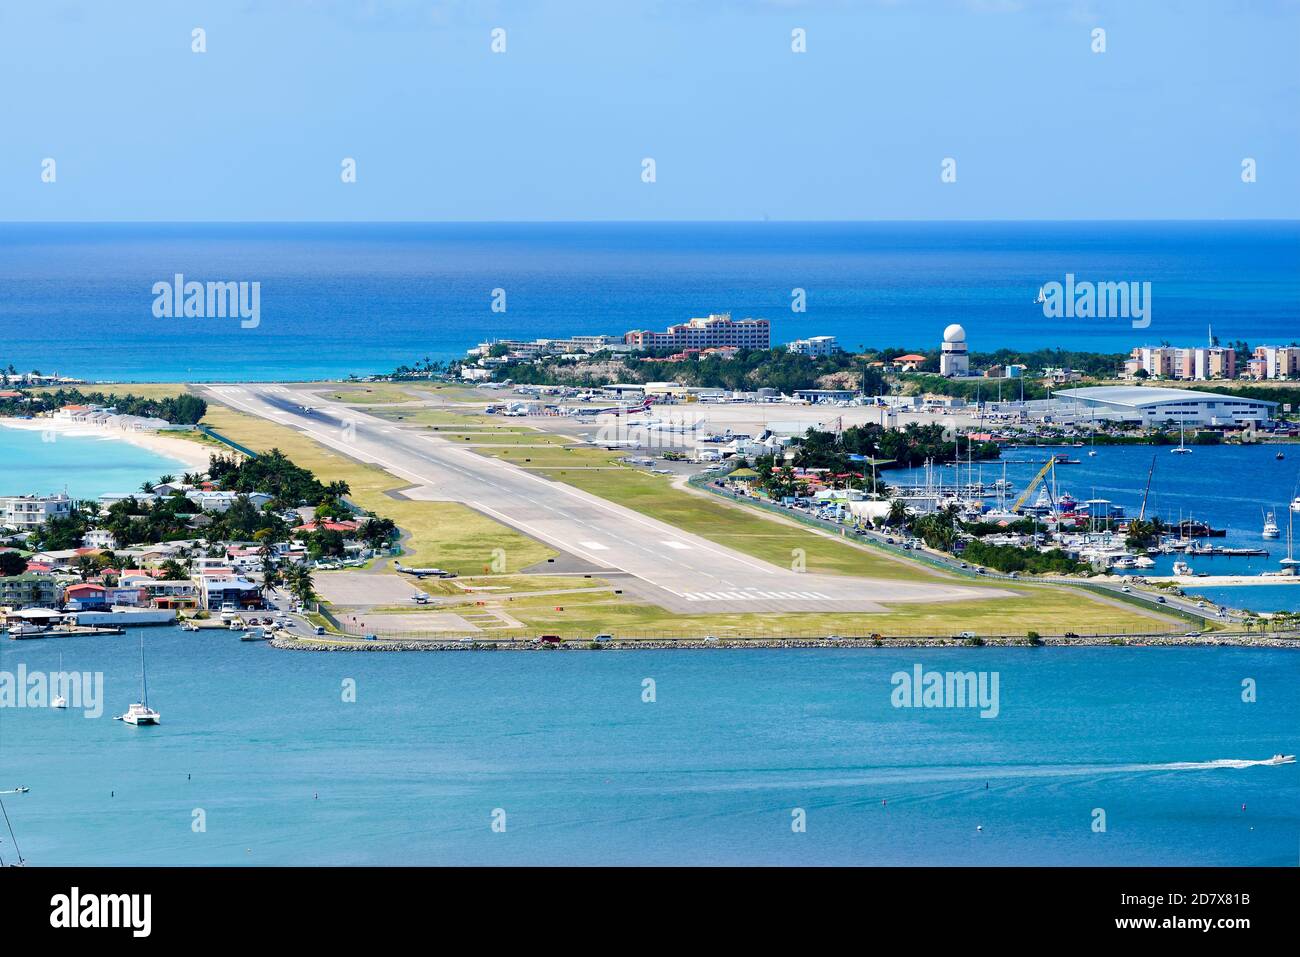 St Maarten Airport, also know as Princess Juliana International Airport (PJIA). Runway of Saint Martin / Sint Maarten airport (SXM / TNCM). Stock Photo